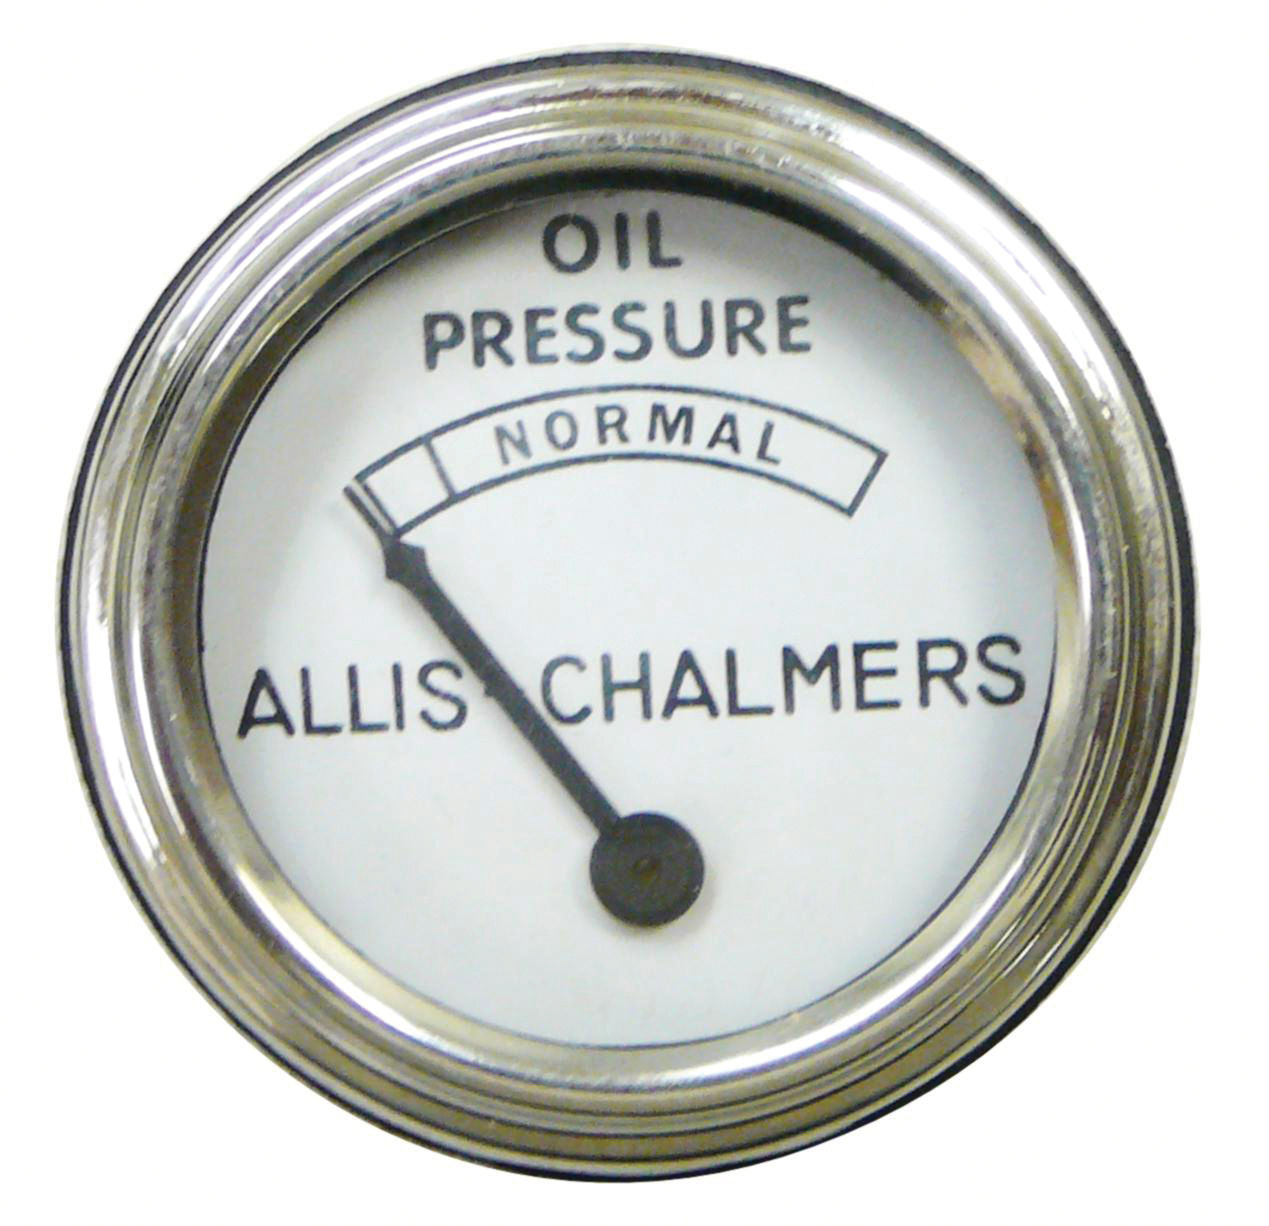 Manomètre de pression d'huile Manomètre de pression d'huile chromé